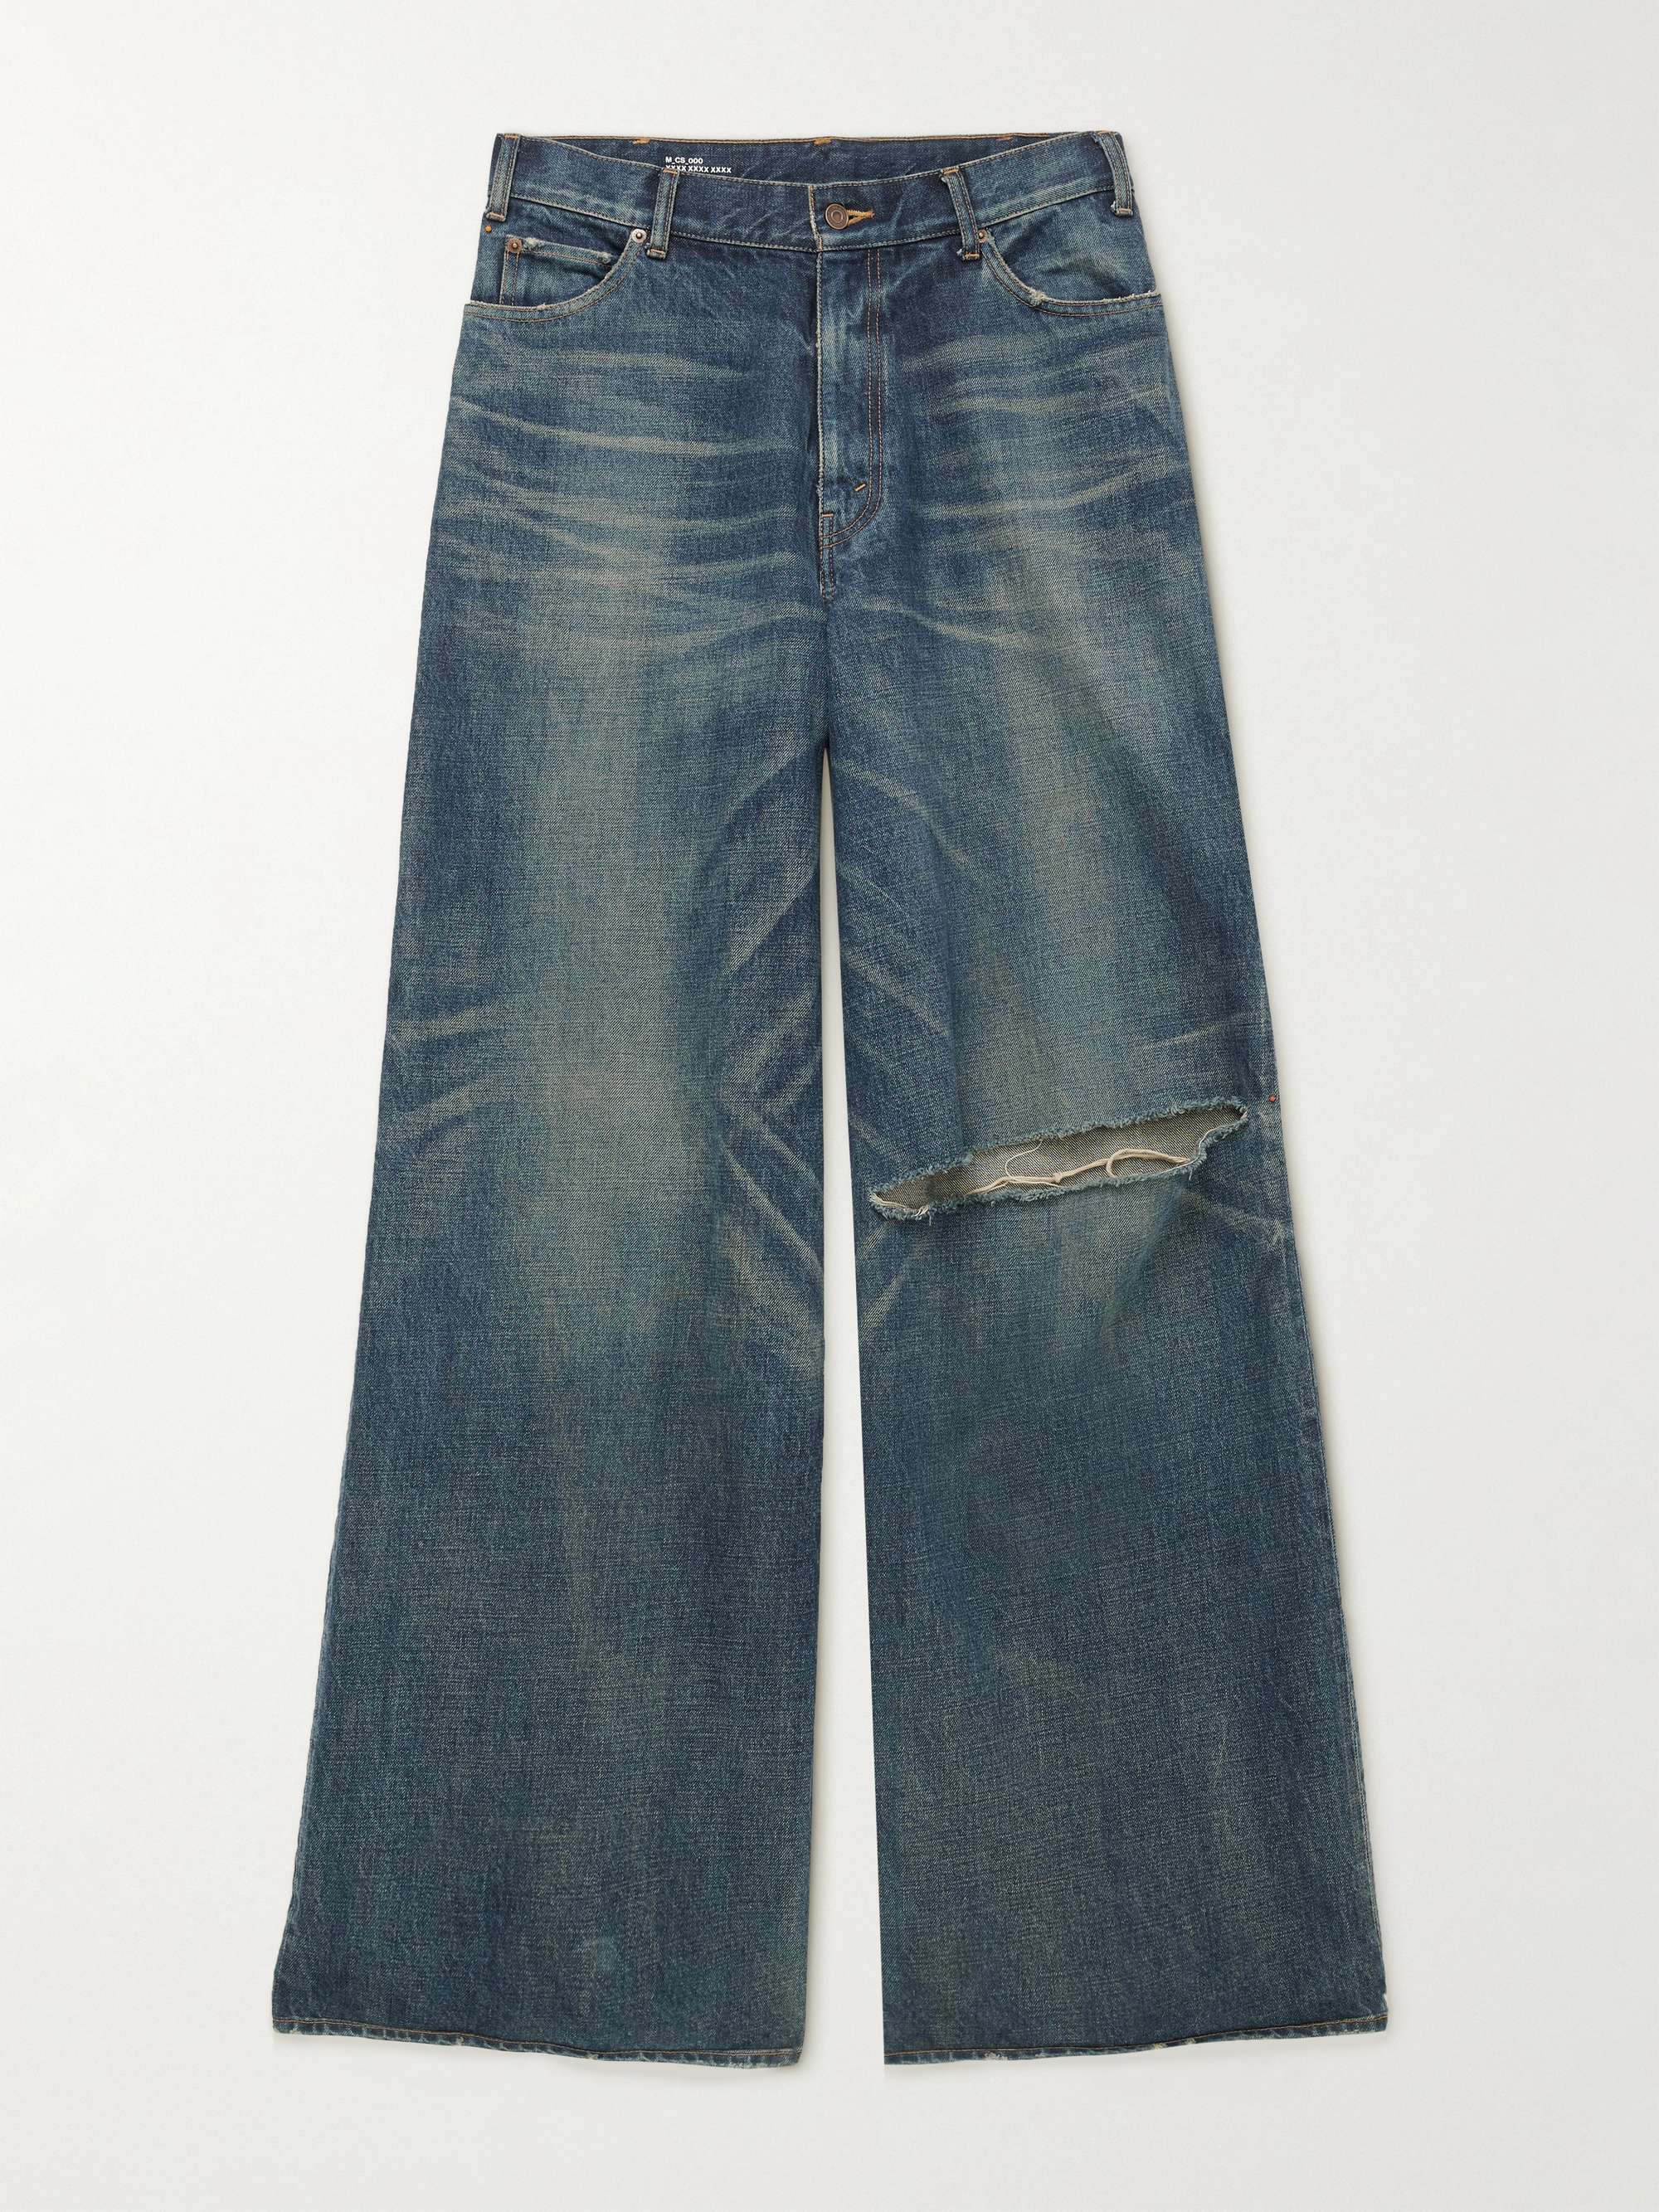 CELINE HOMME Wide-Leg Distressed Jeans for Men | MR PORTER